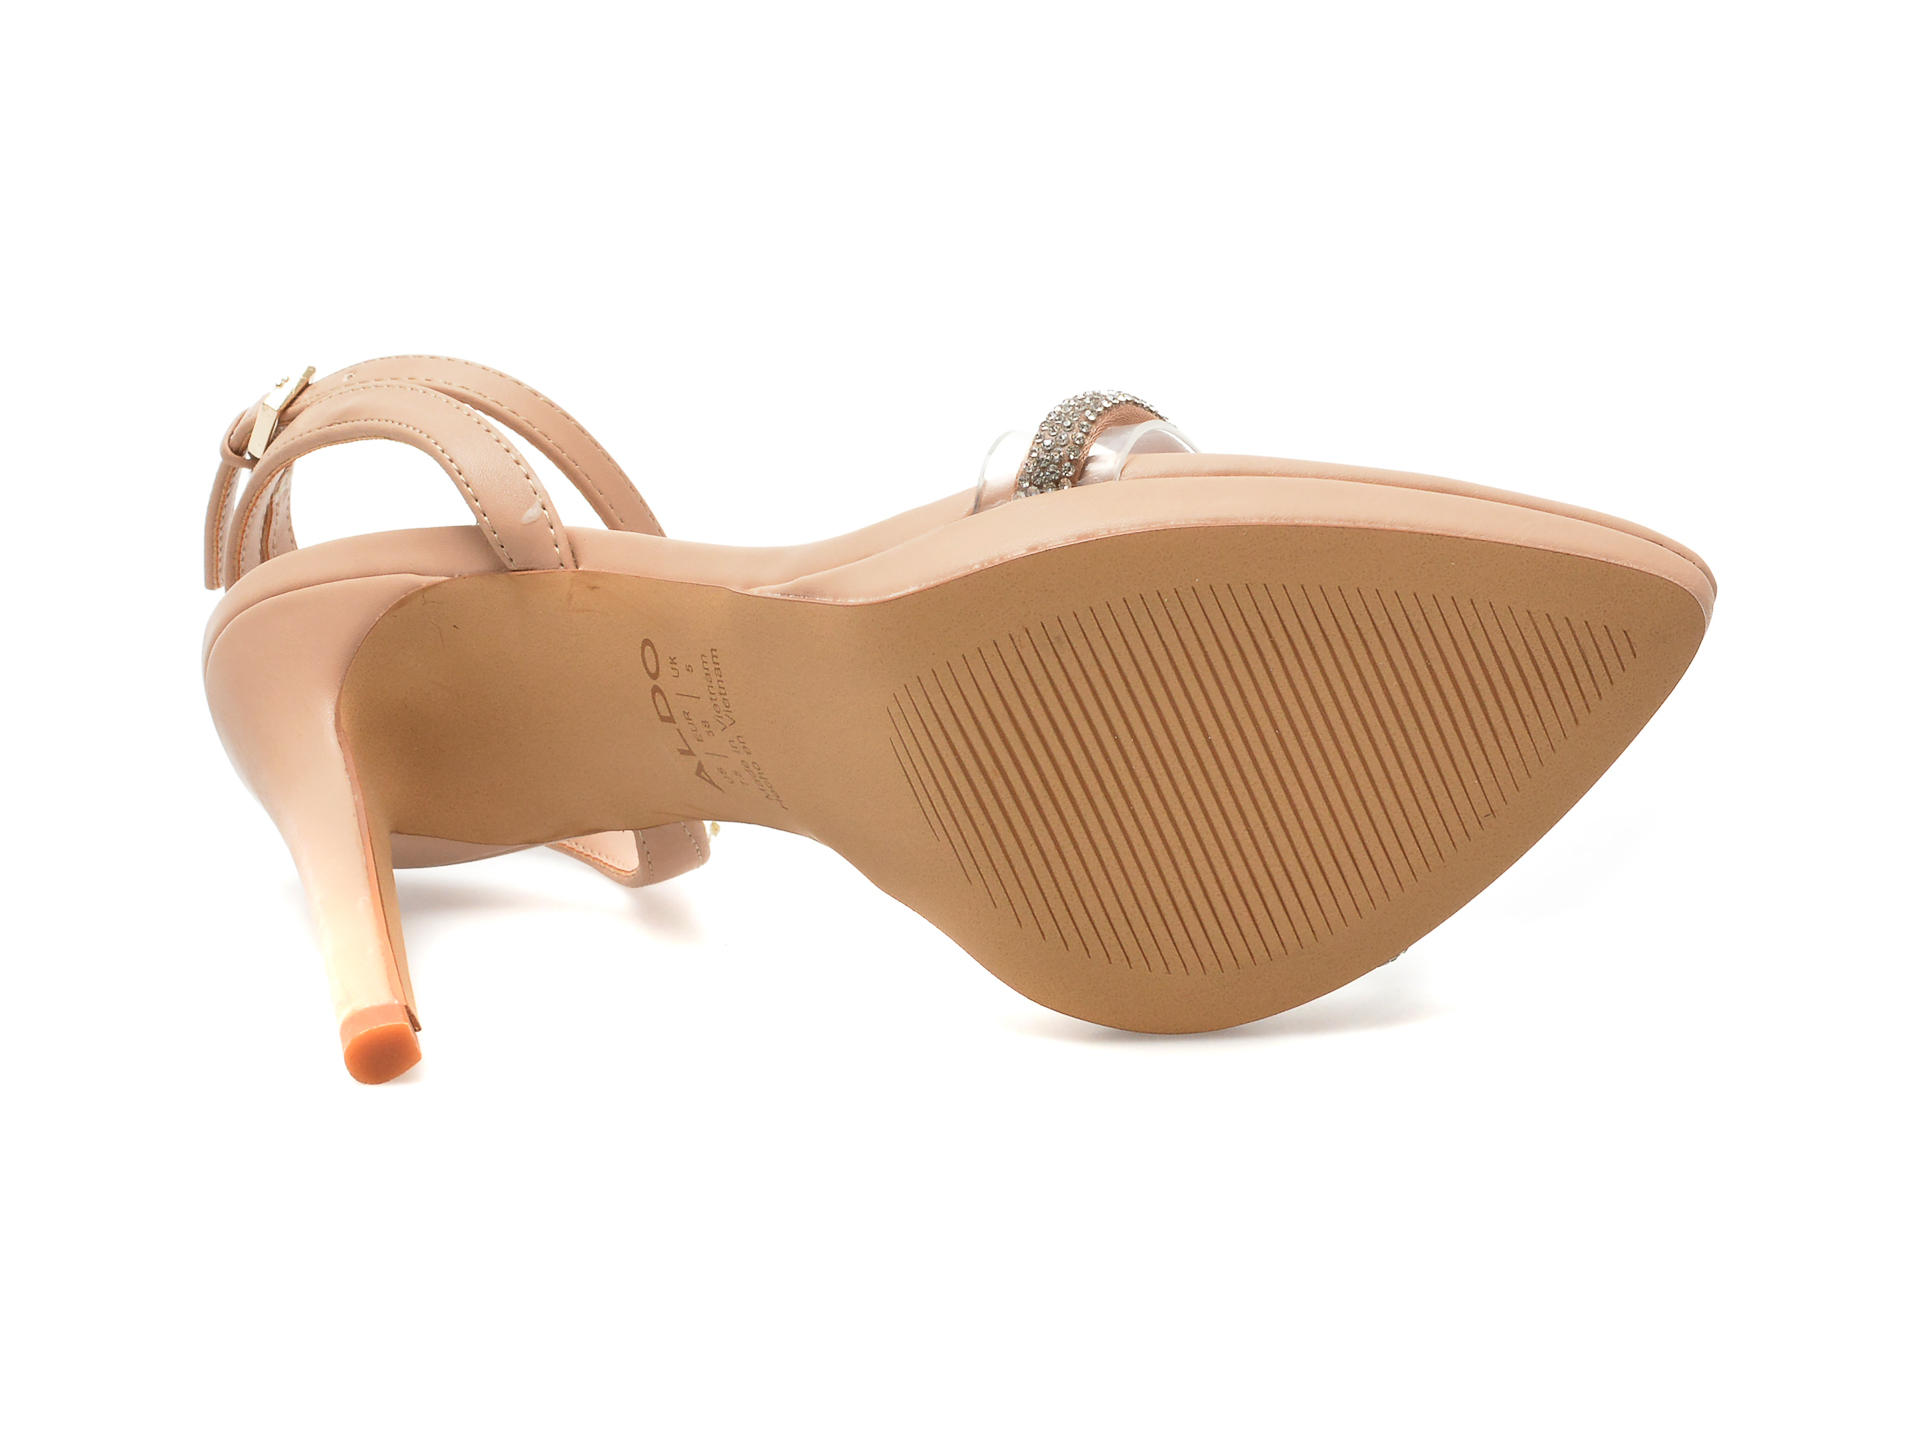 Sandale ALDO nude, THIRAKIN270, din piele ecologica